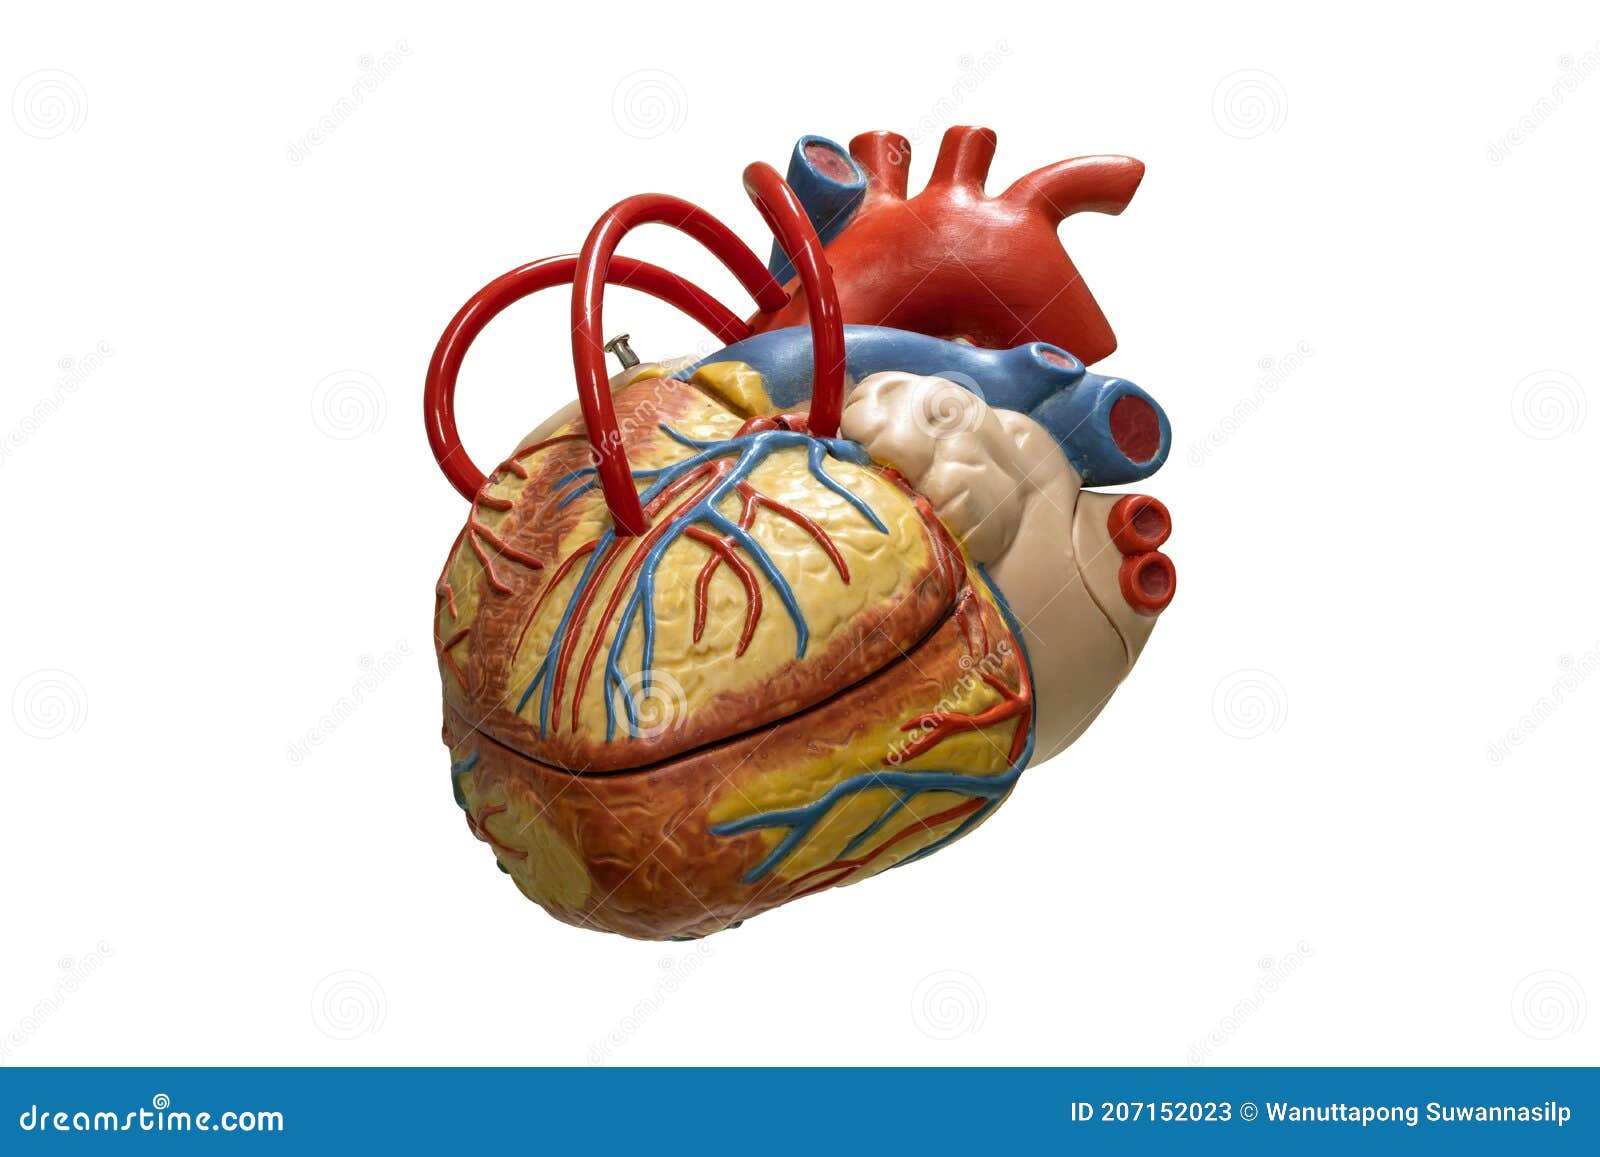 Anatomía Humana Modelo De Plástico De Corazón Aislado En Fondo Blanco  Imagen de archivo - Imagen de salud, sangre: 207152023